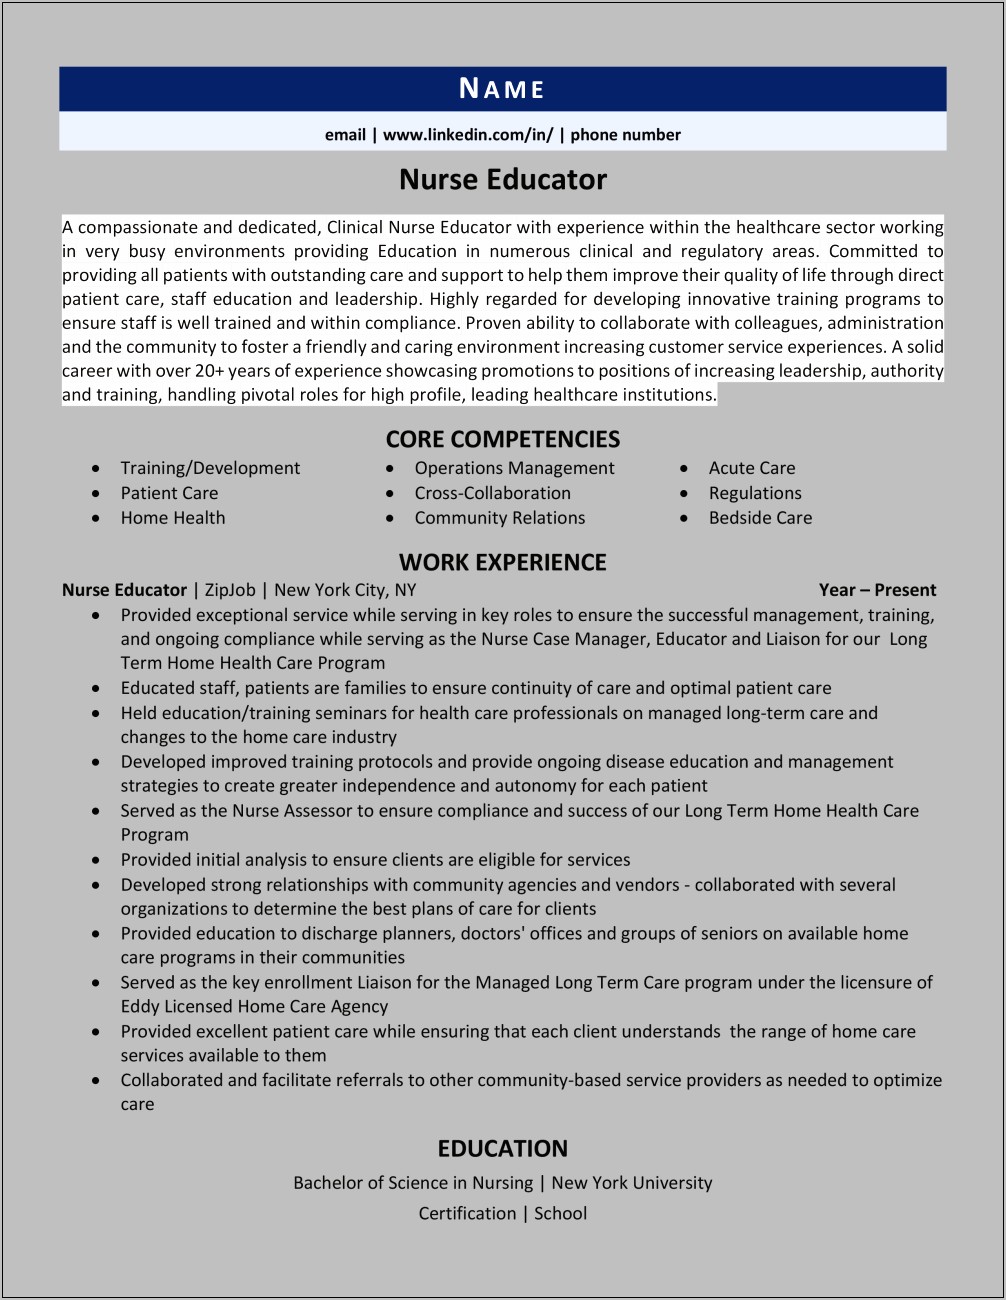 Nurse Educator School Practicum For Resume